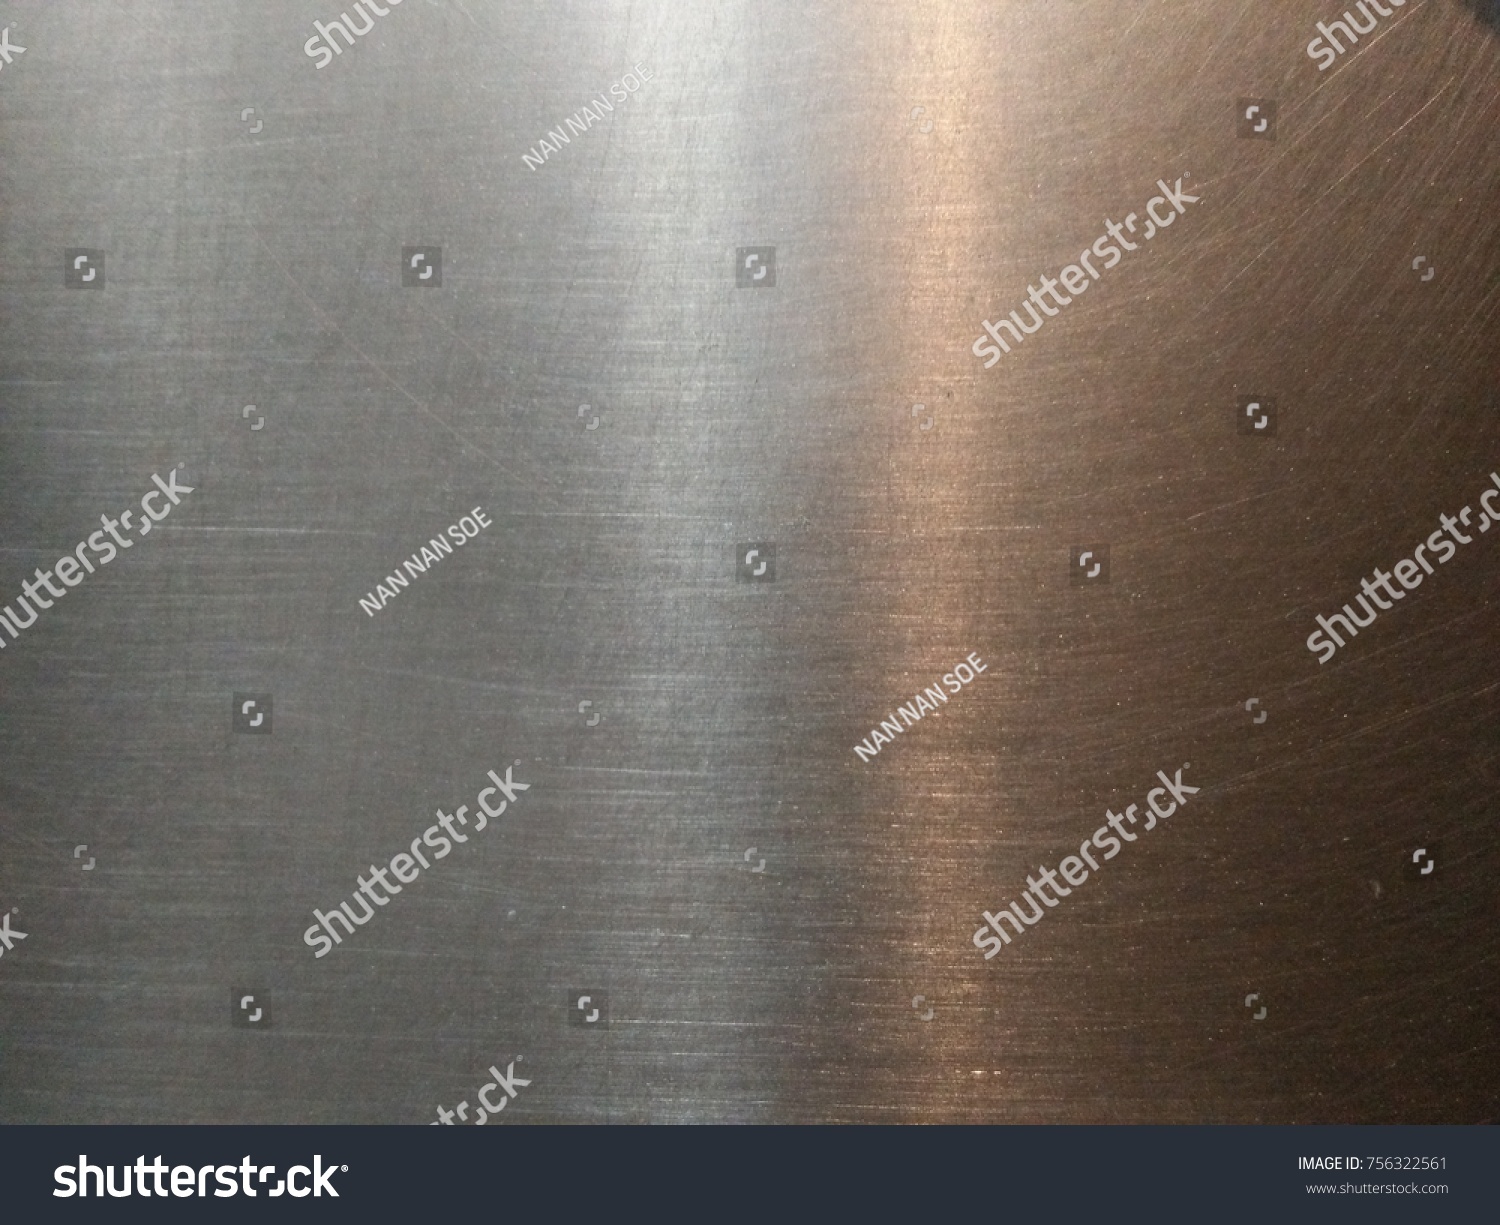 Steel Metal or background of metal #756322561